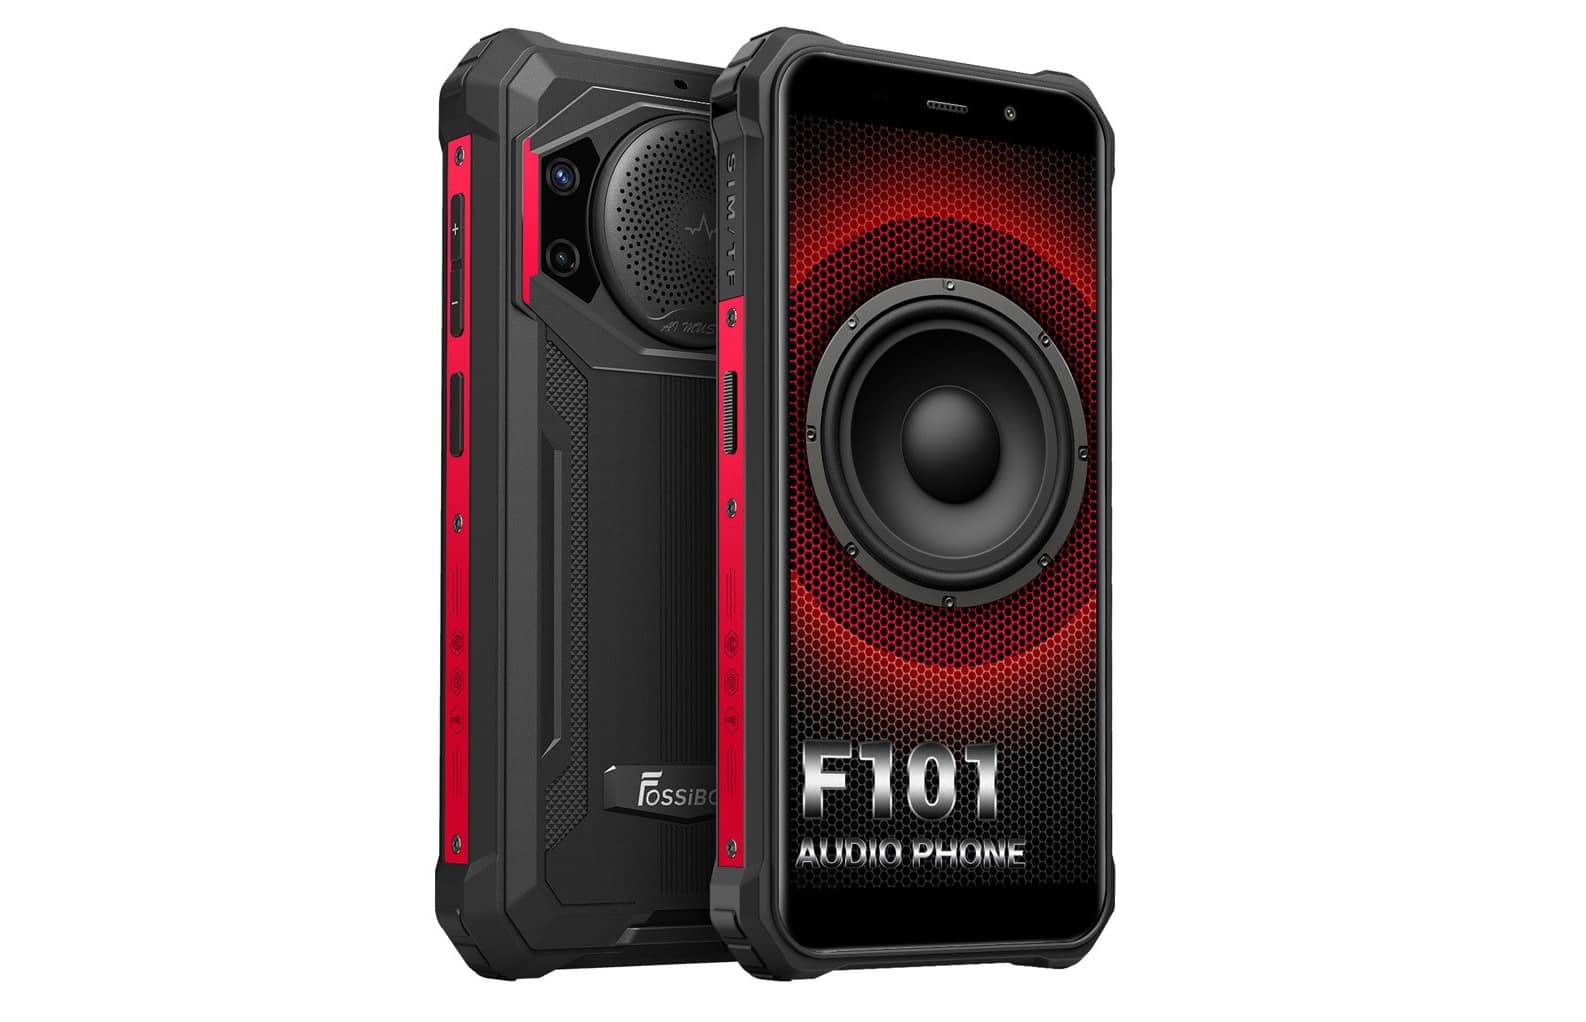 Представлен новый защищенный смартфон FOSSiBOT F101